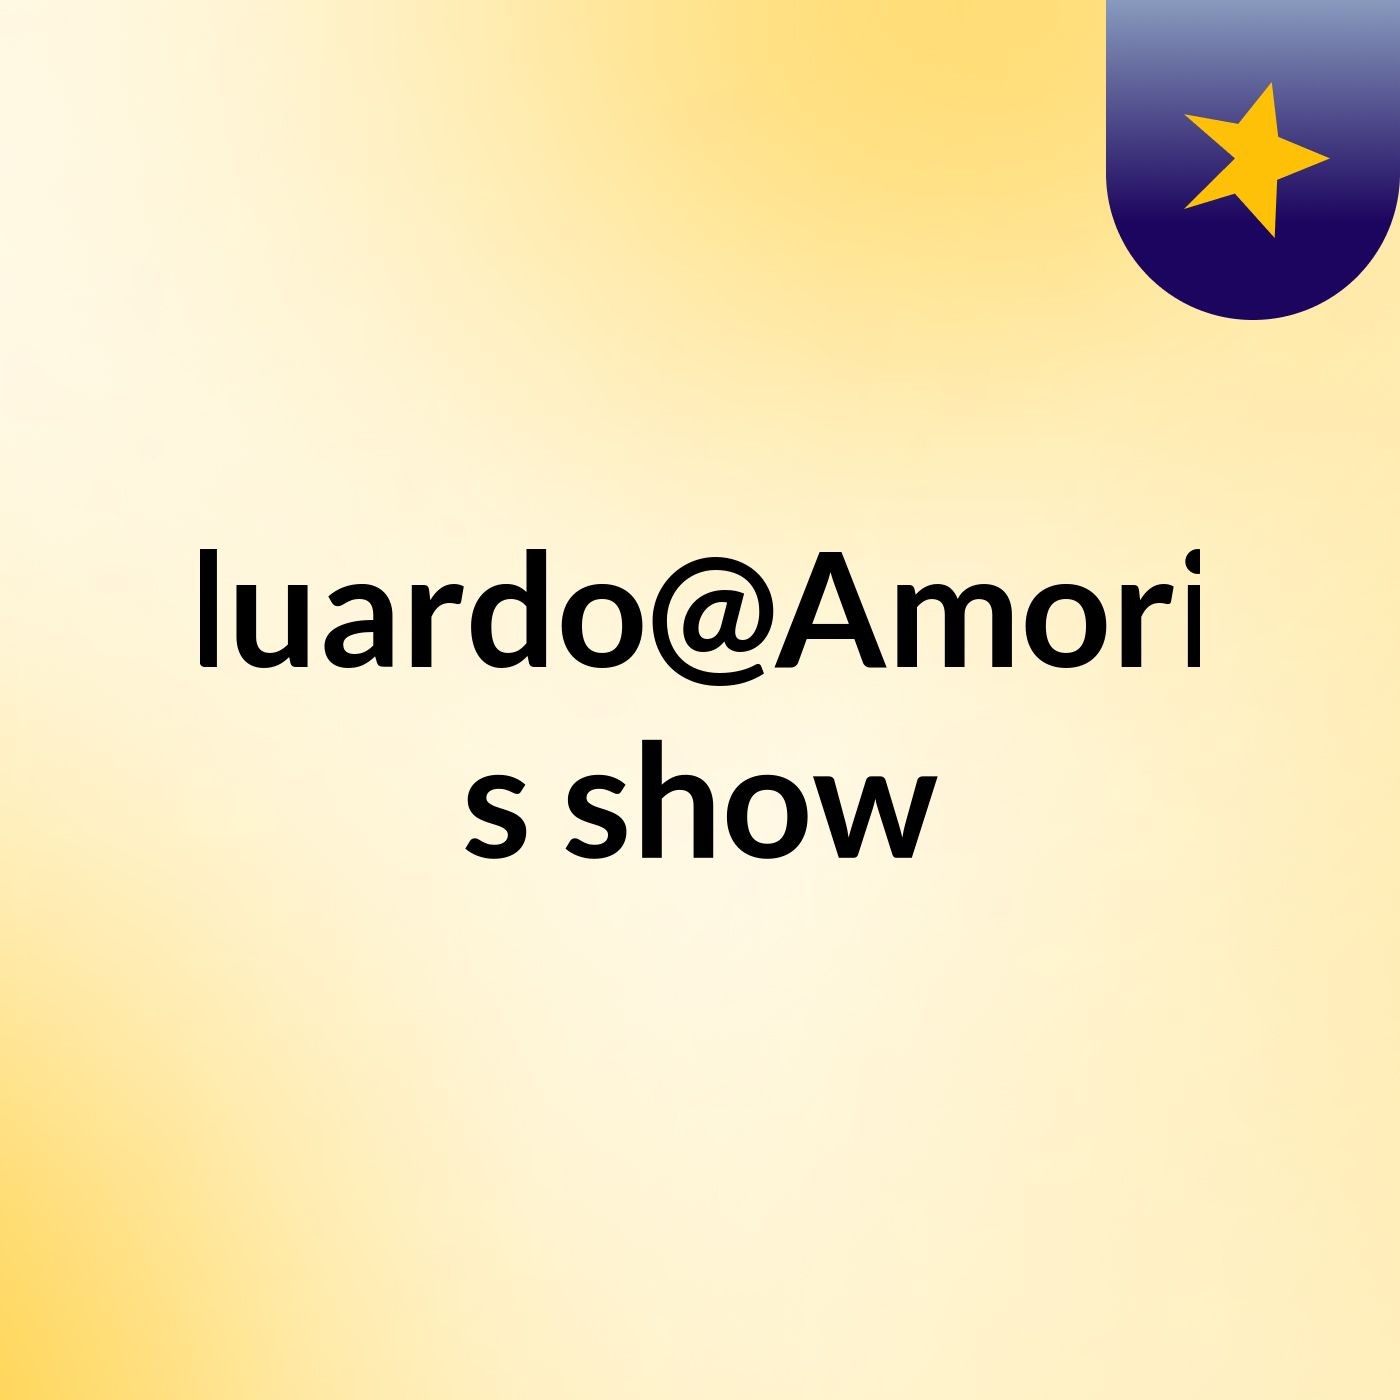 Eduardo@Amorim's show